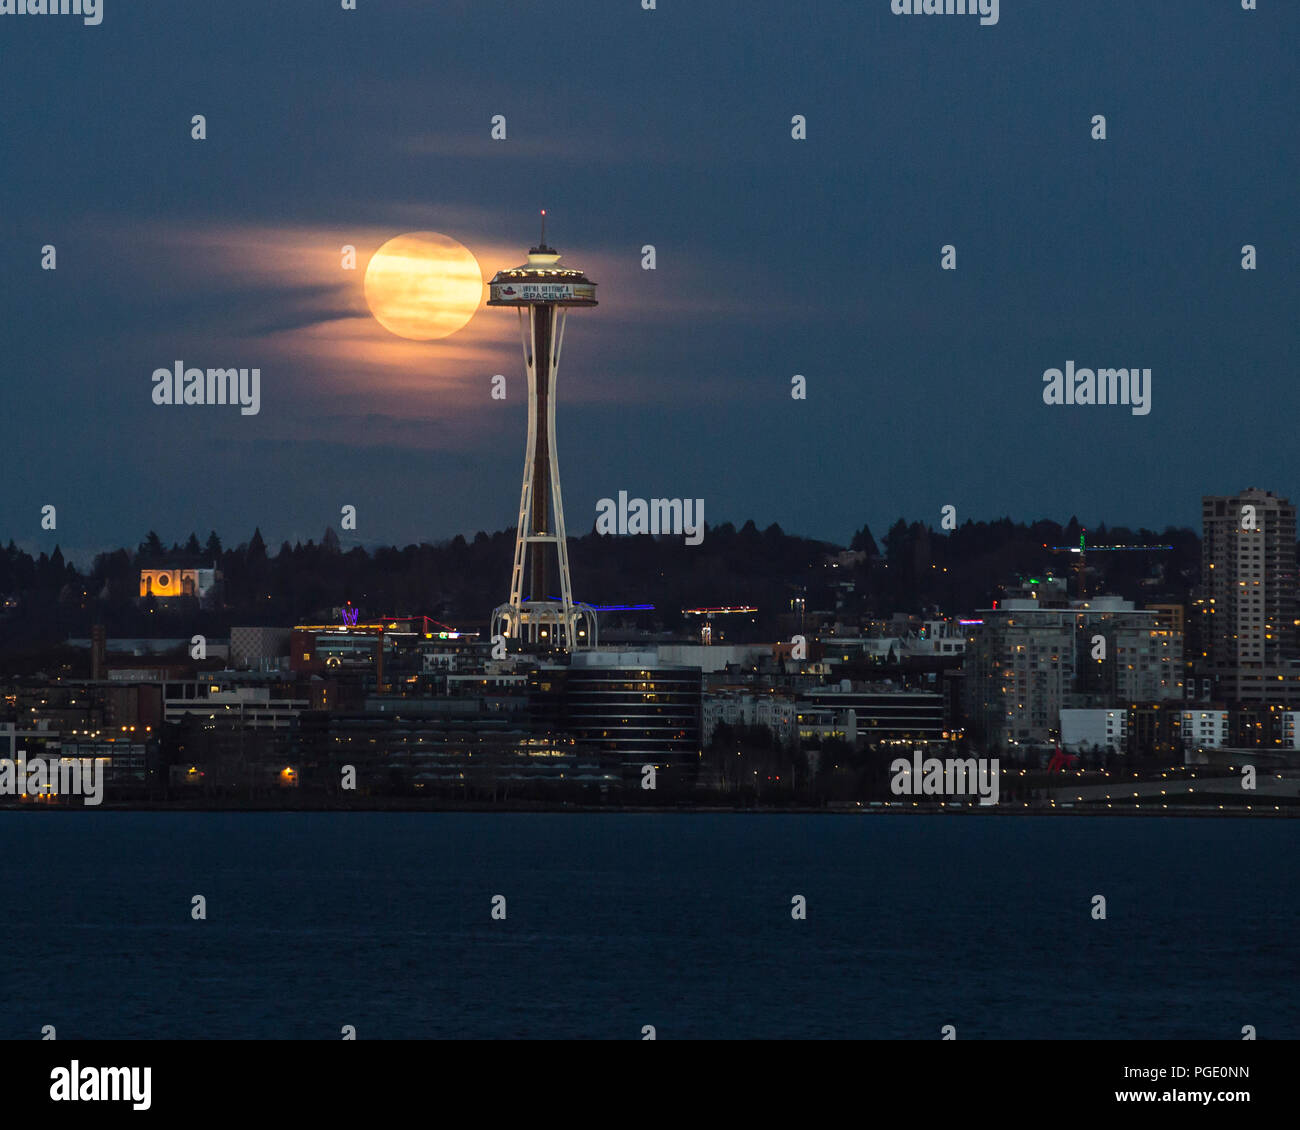 Seattle Space Needle, Seattle skyline, Seattle Waterfront con aumento de luna llena. Foto de stock